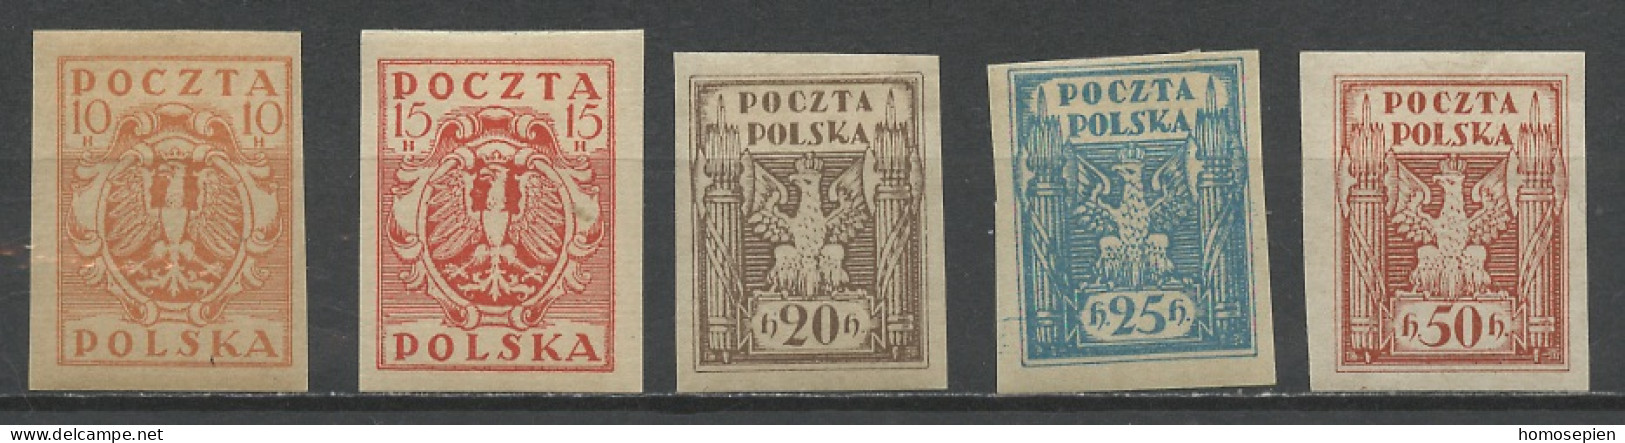 Pologne - Poland - Polen 1919 Y&T N°174 à 178 - Michel N°68 à 72 * - Sujets Divers - Nuevos